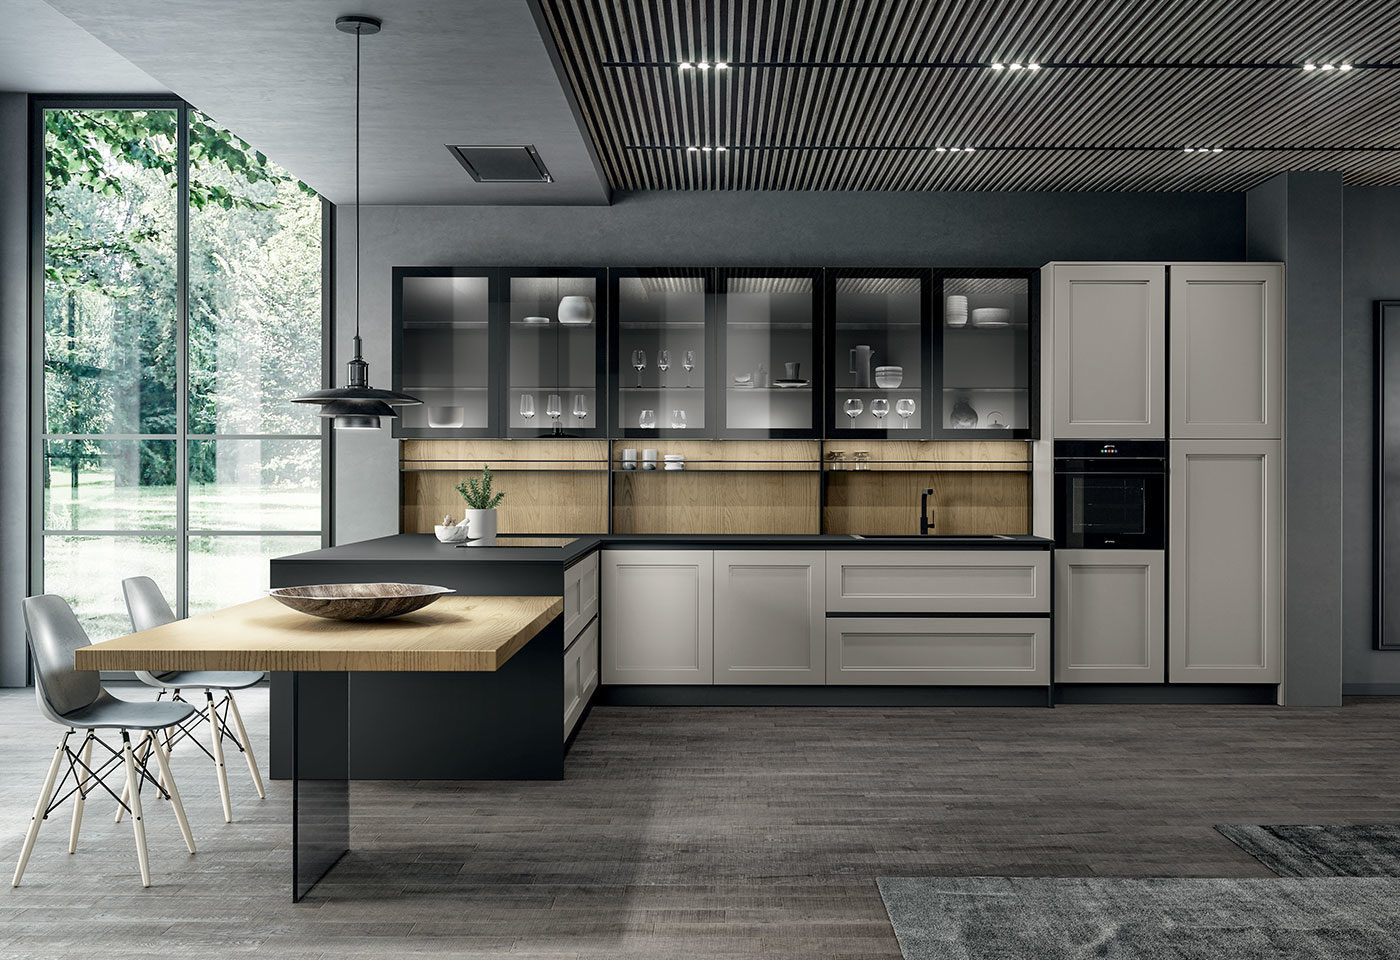 Cucina moderna, L&M design di Cinzia Marelli L&M design di Cinzia Marelli Built-in kitchens Wood Wood effect